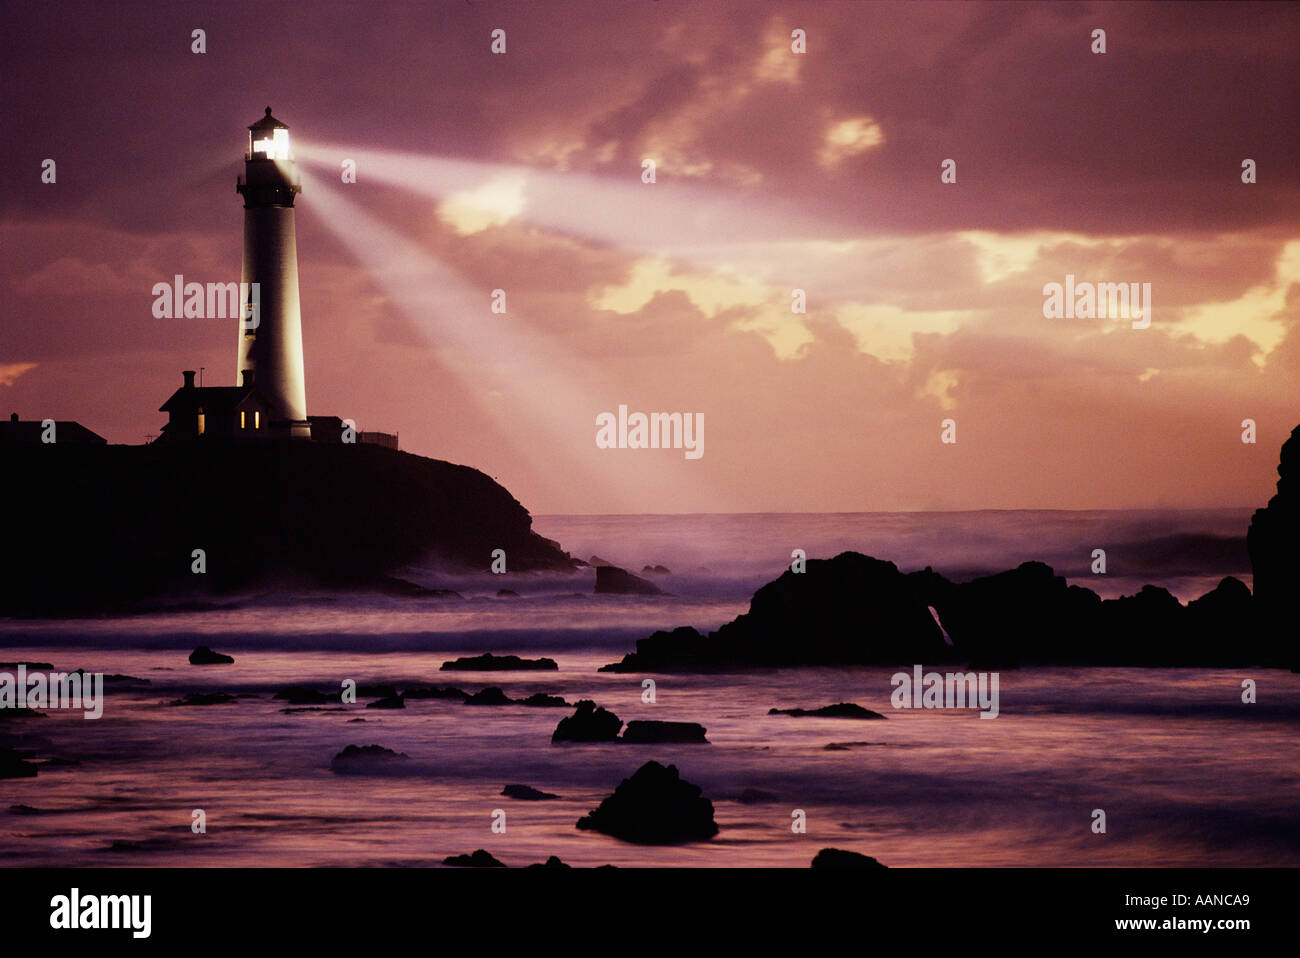 Pigeon Point Lighthouse raggio di colata attraverso costa rocciosa e il cielo al tramonto. Immagine non è alterata in modo digitale - Nessun negozio di fotografia. Reale! Foto Stock